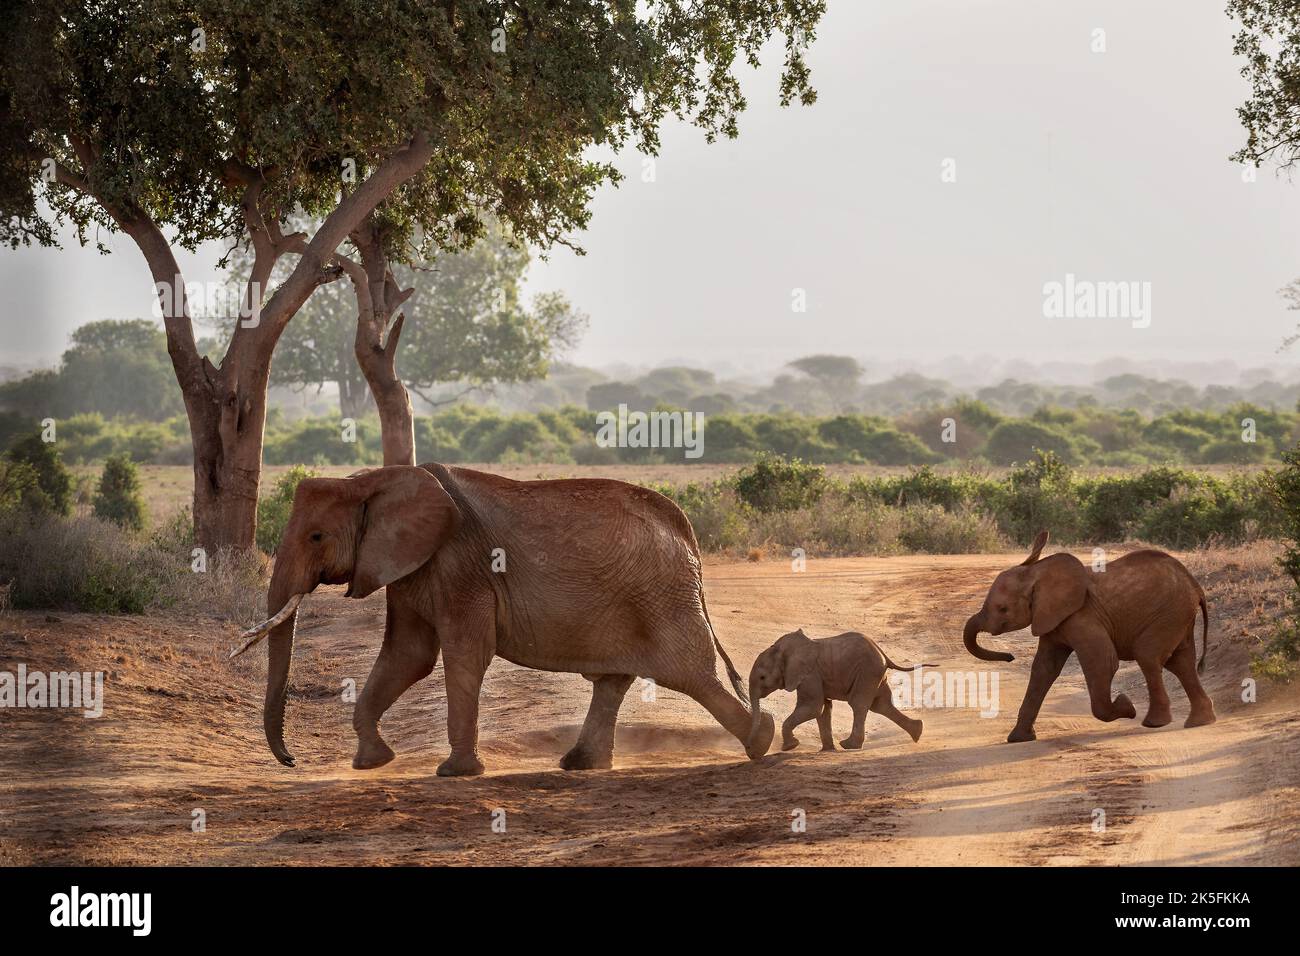 Elefante Africano, Loxodonta africana, Elephantidae, Parque Nacional Tsavo Este, Kenia, África Foto de stock